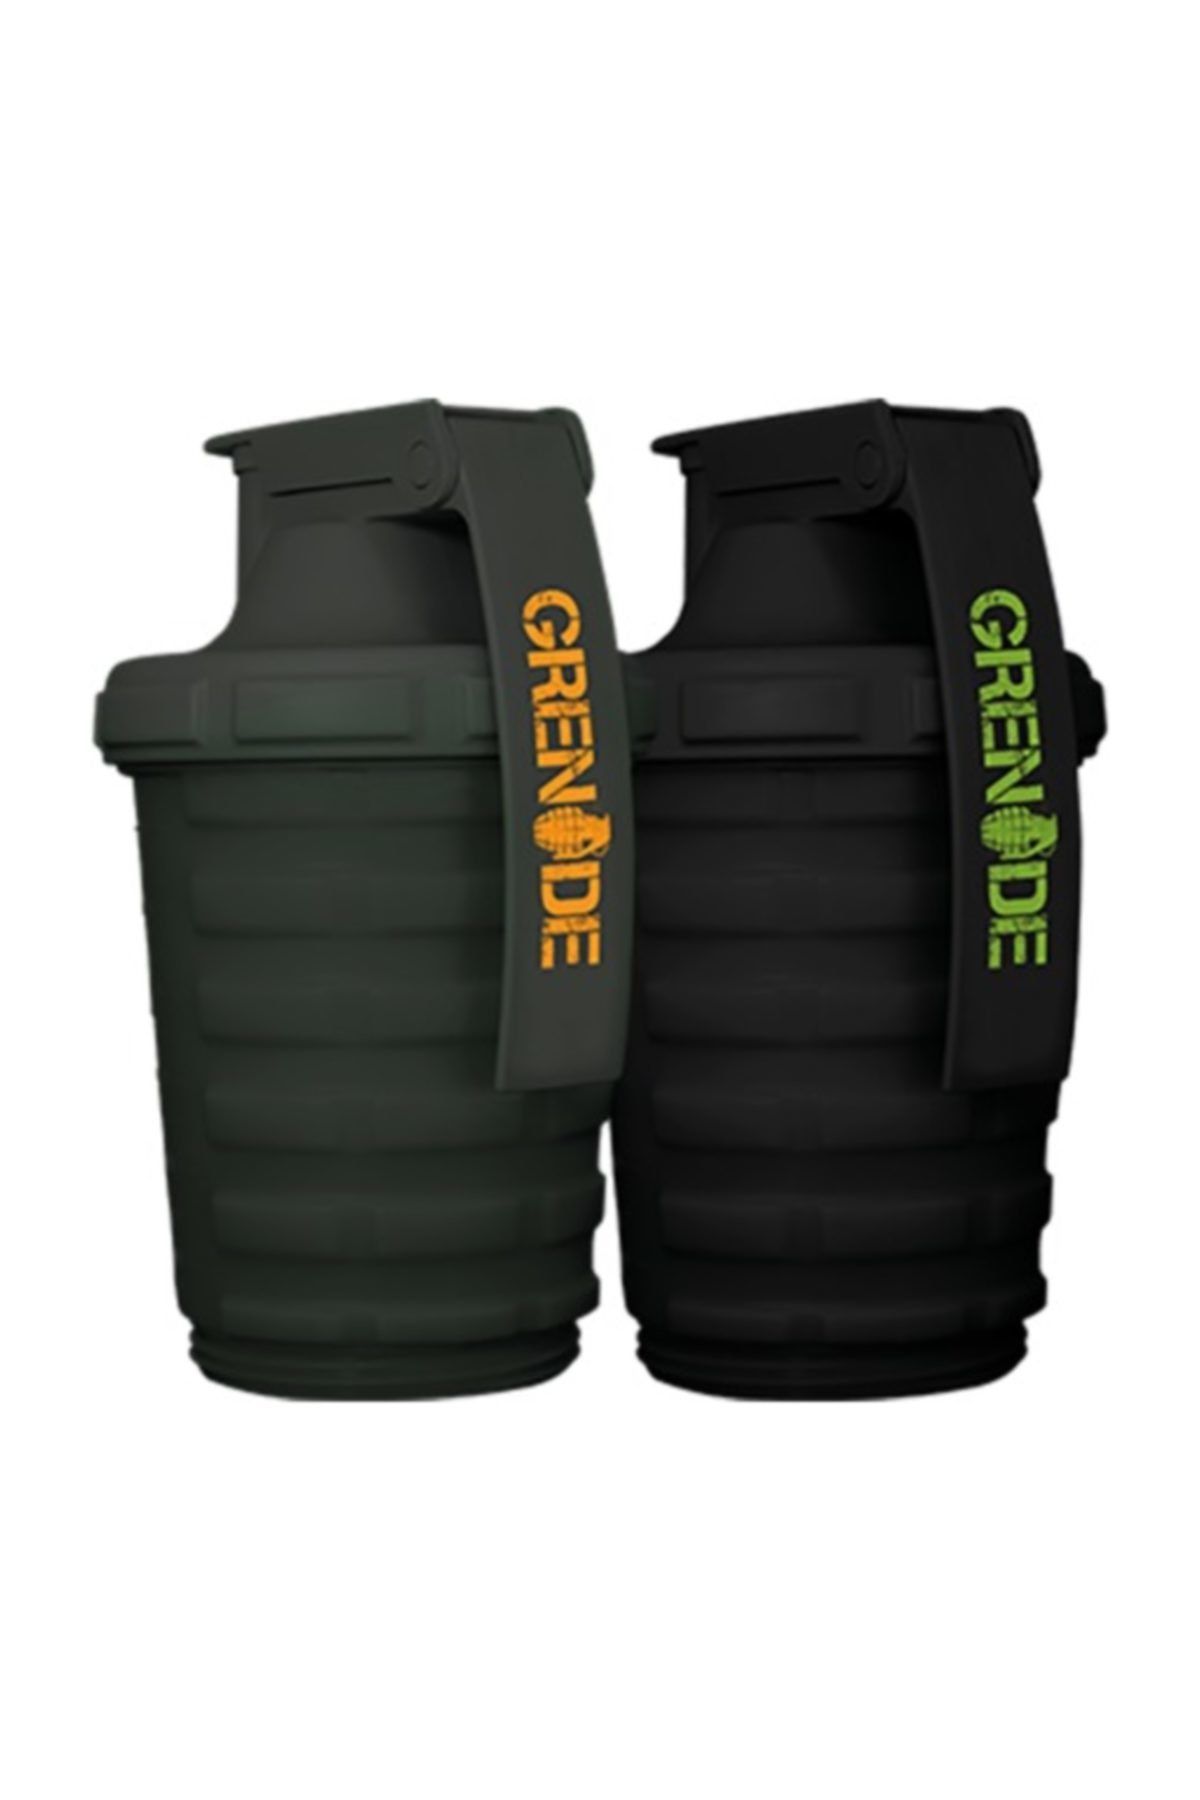 Grenade Shaker - Yeşil